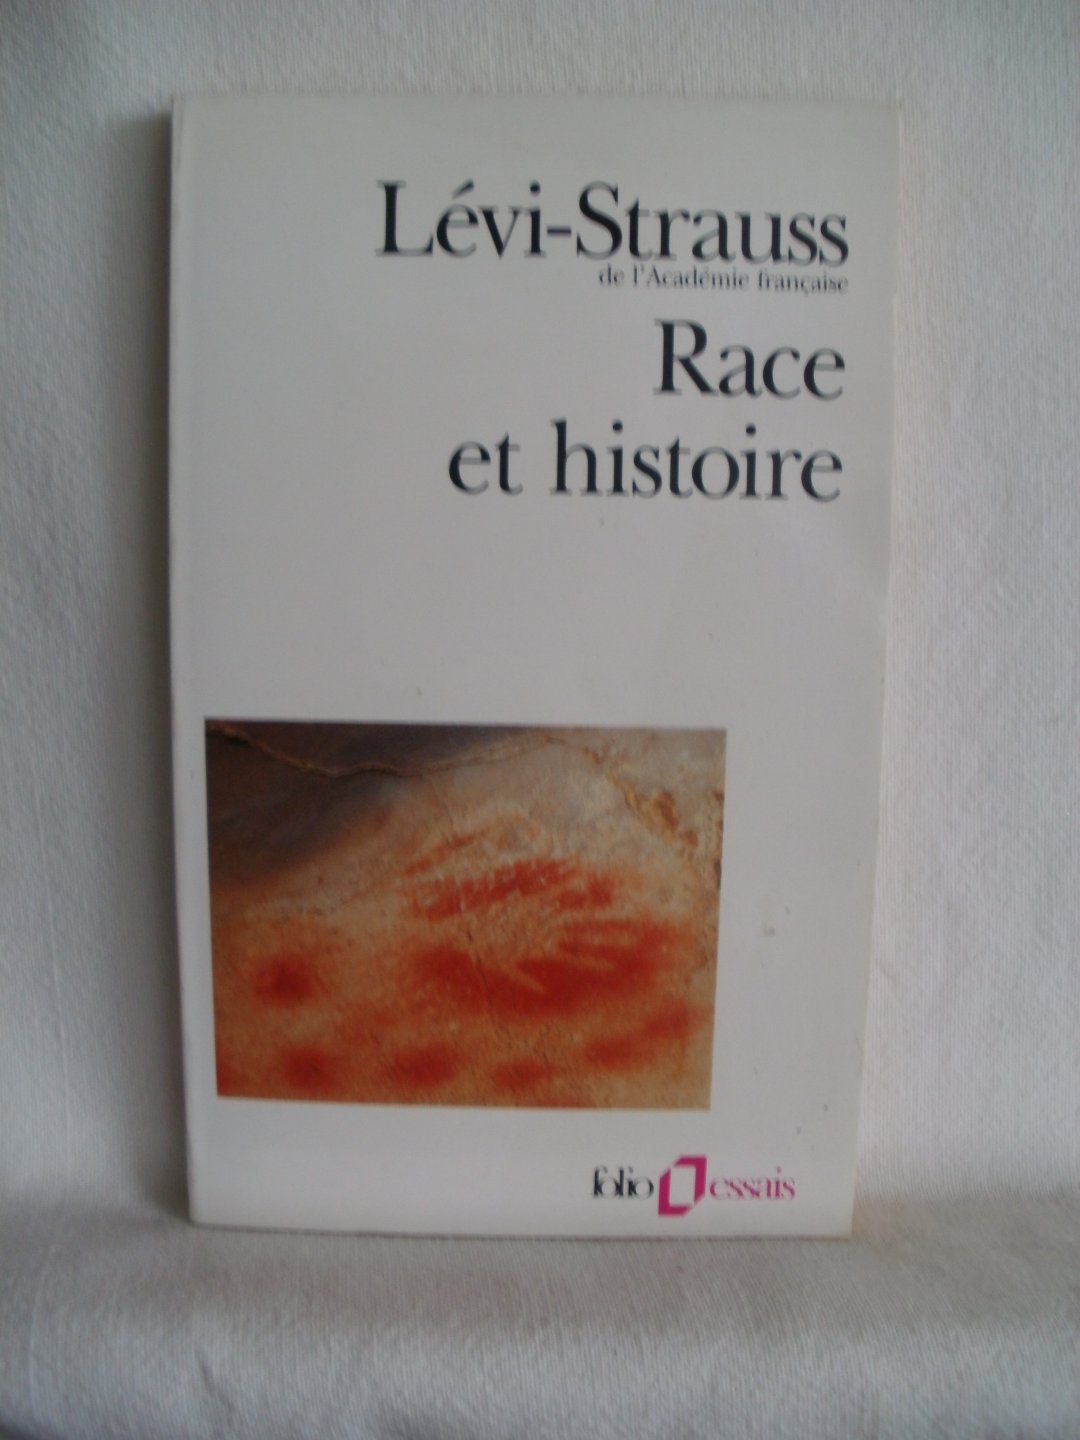 Levi-Strauus, Claude; Pouillon, Jean - Race et histoire. Suivi de L'oeuvre de Claude Levi-Strauss par Jean Pouillon